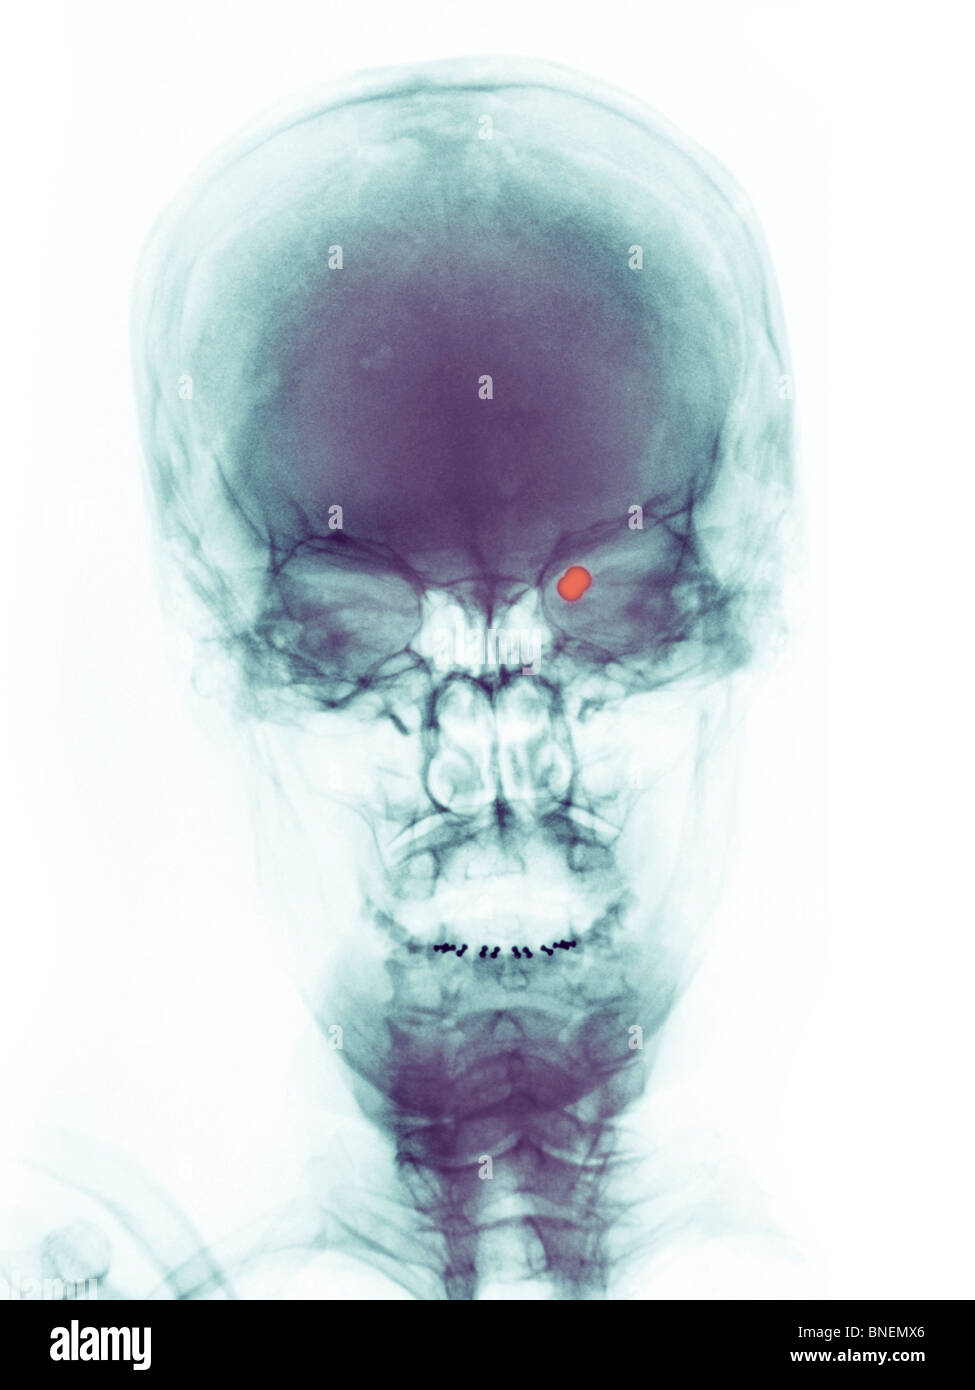 Cranio x-ray di una donna shot nell'occhio con una pistola di pellet. Foto Stock